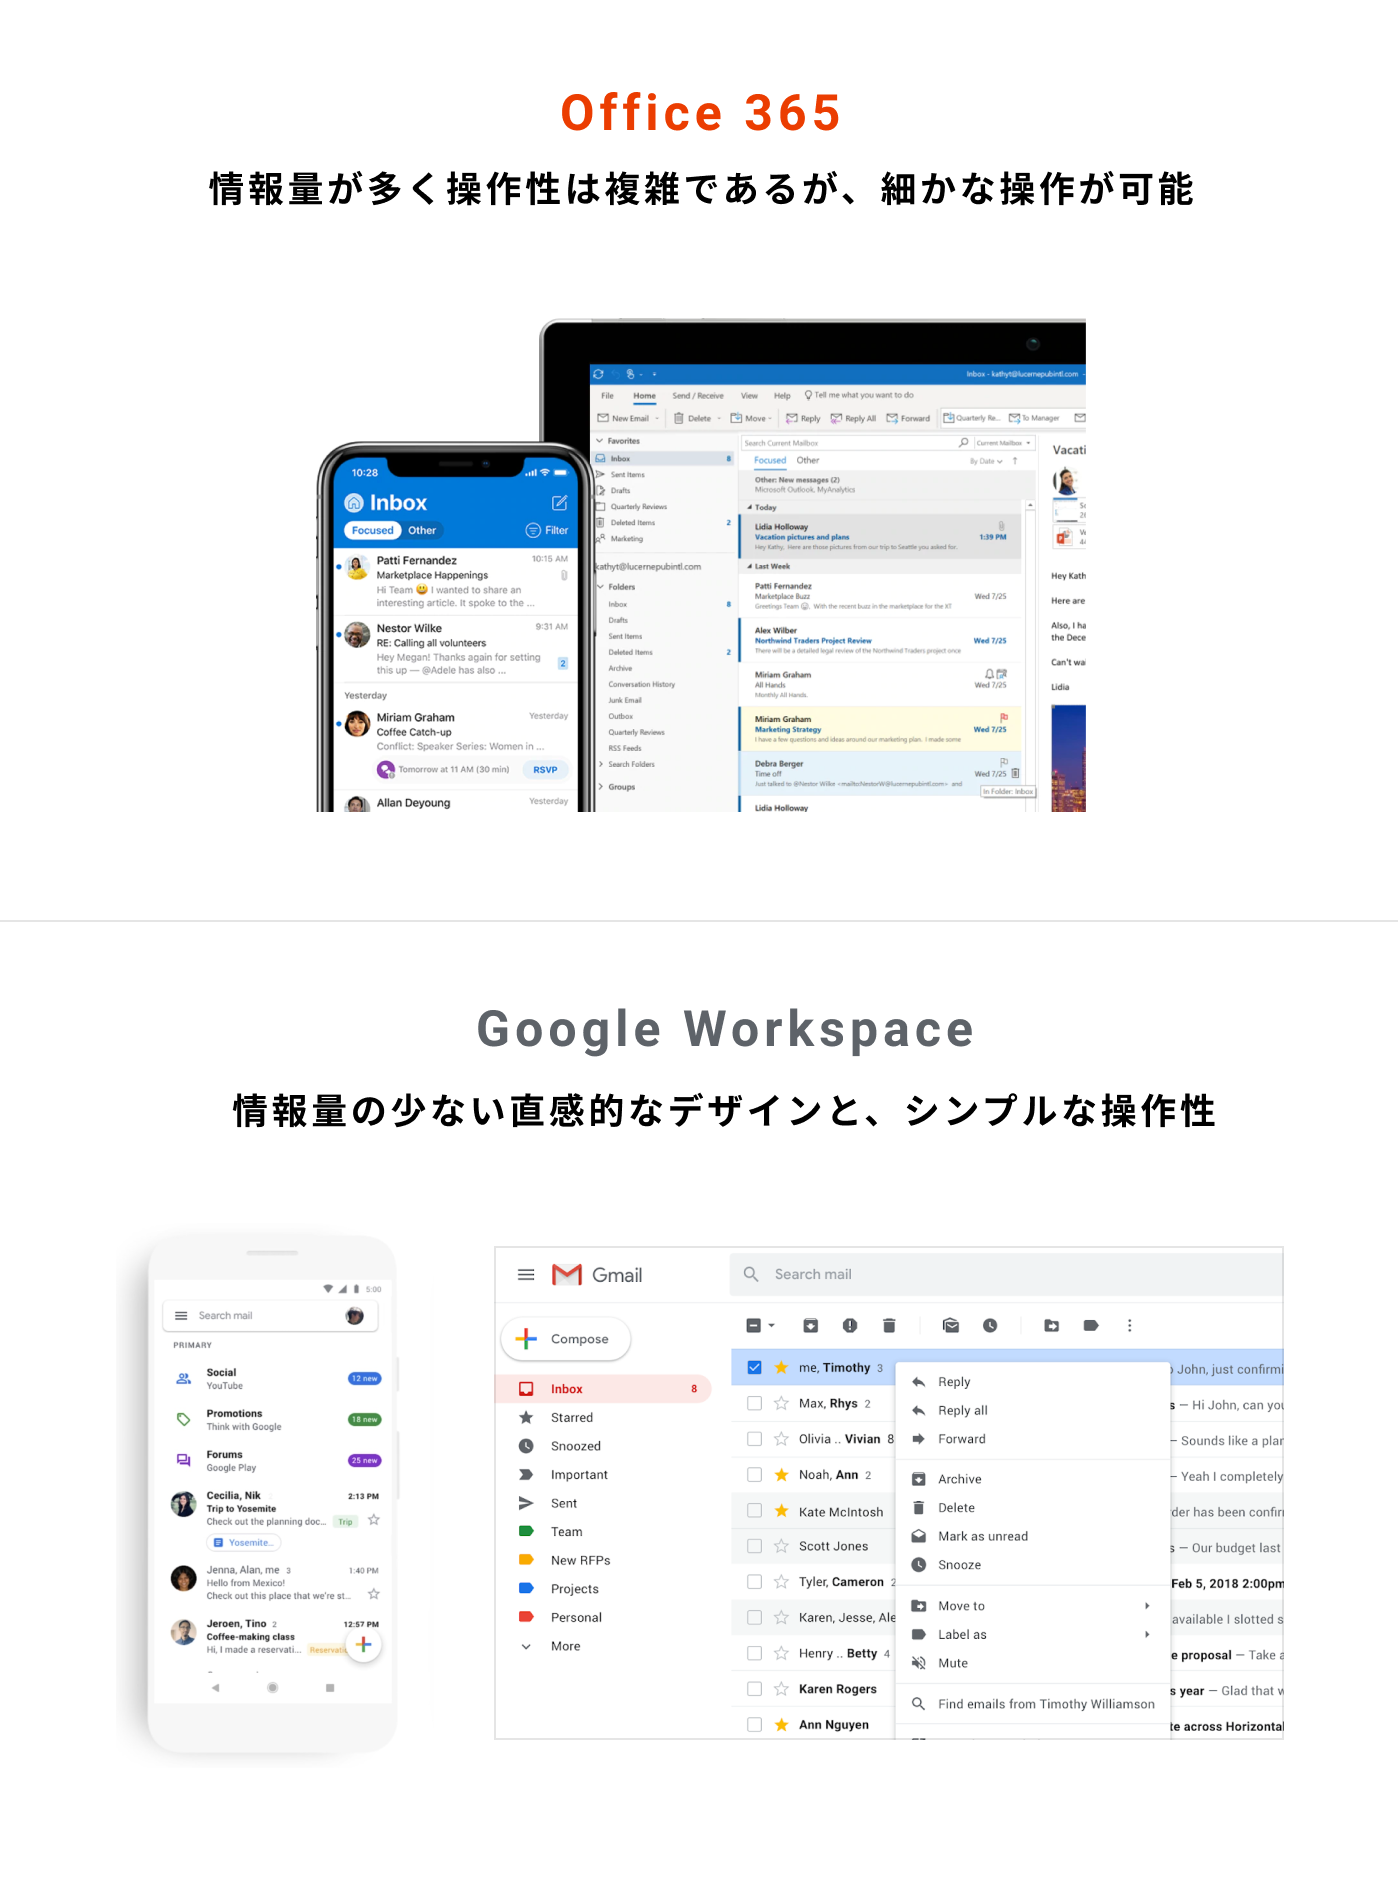 Office 365とGoogle Workspaceのデザインや使い勝手の比較